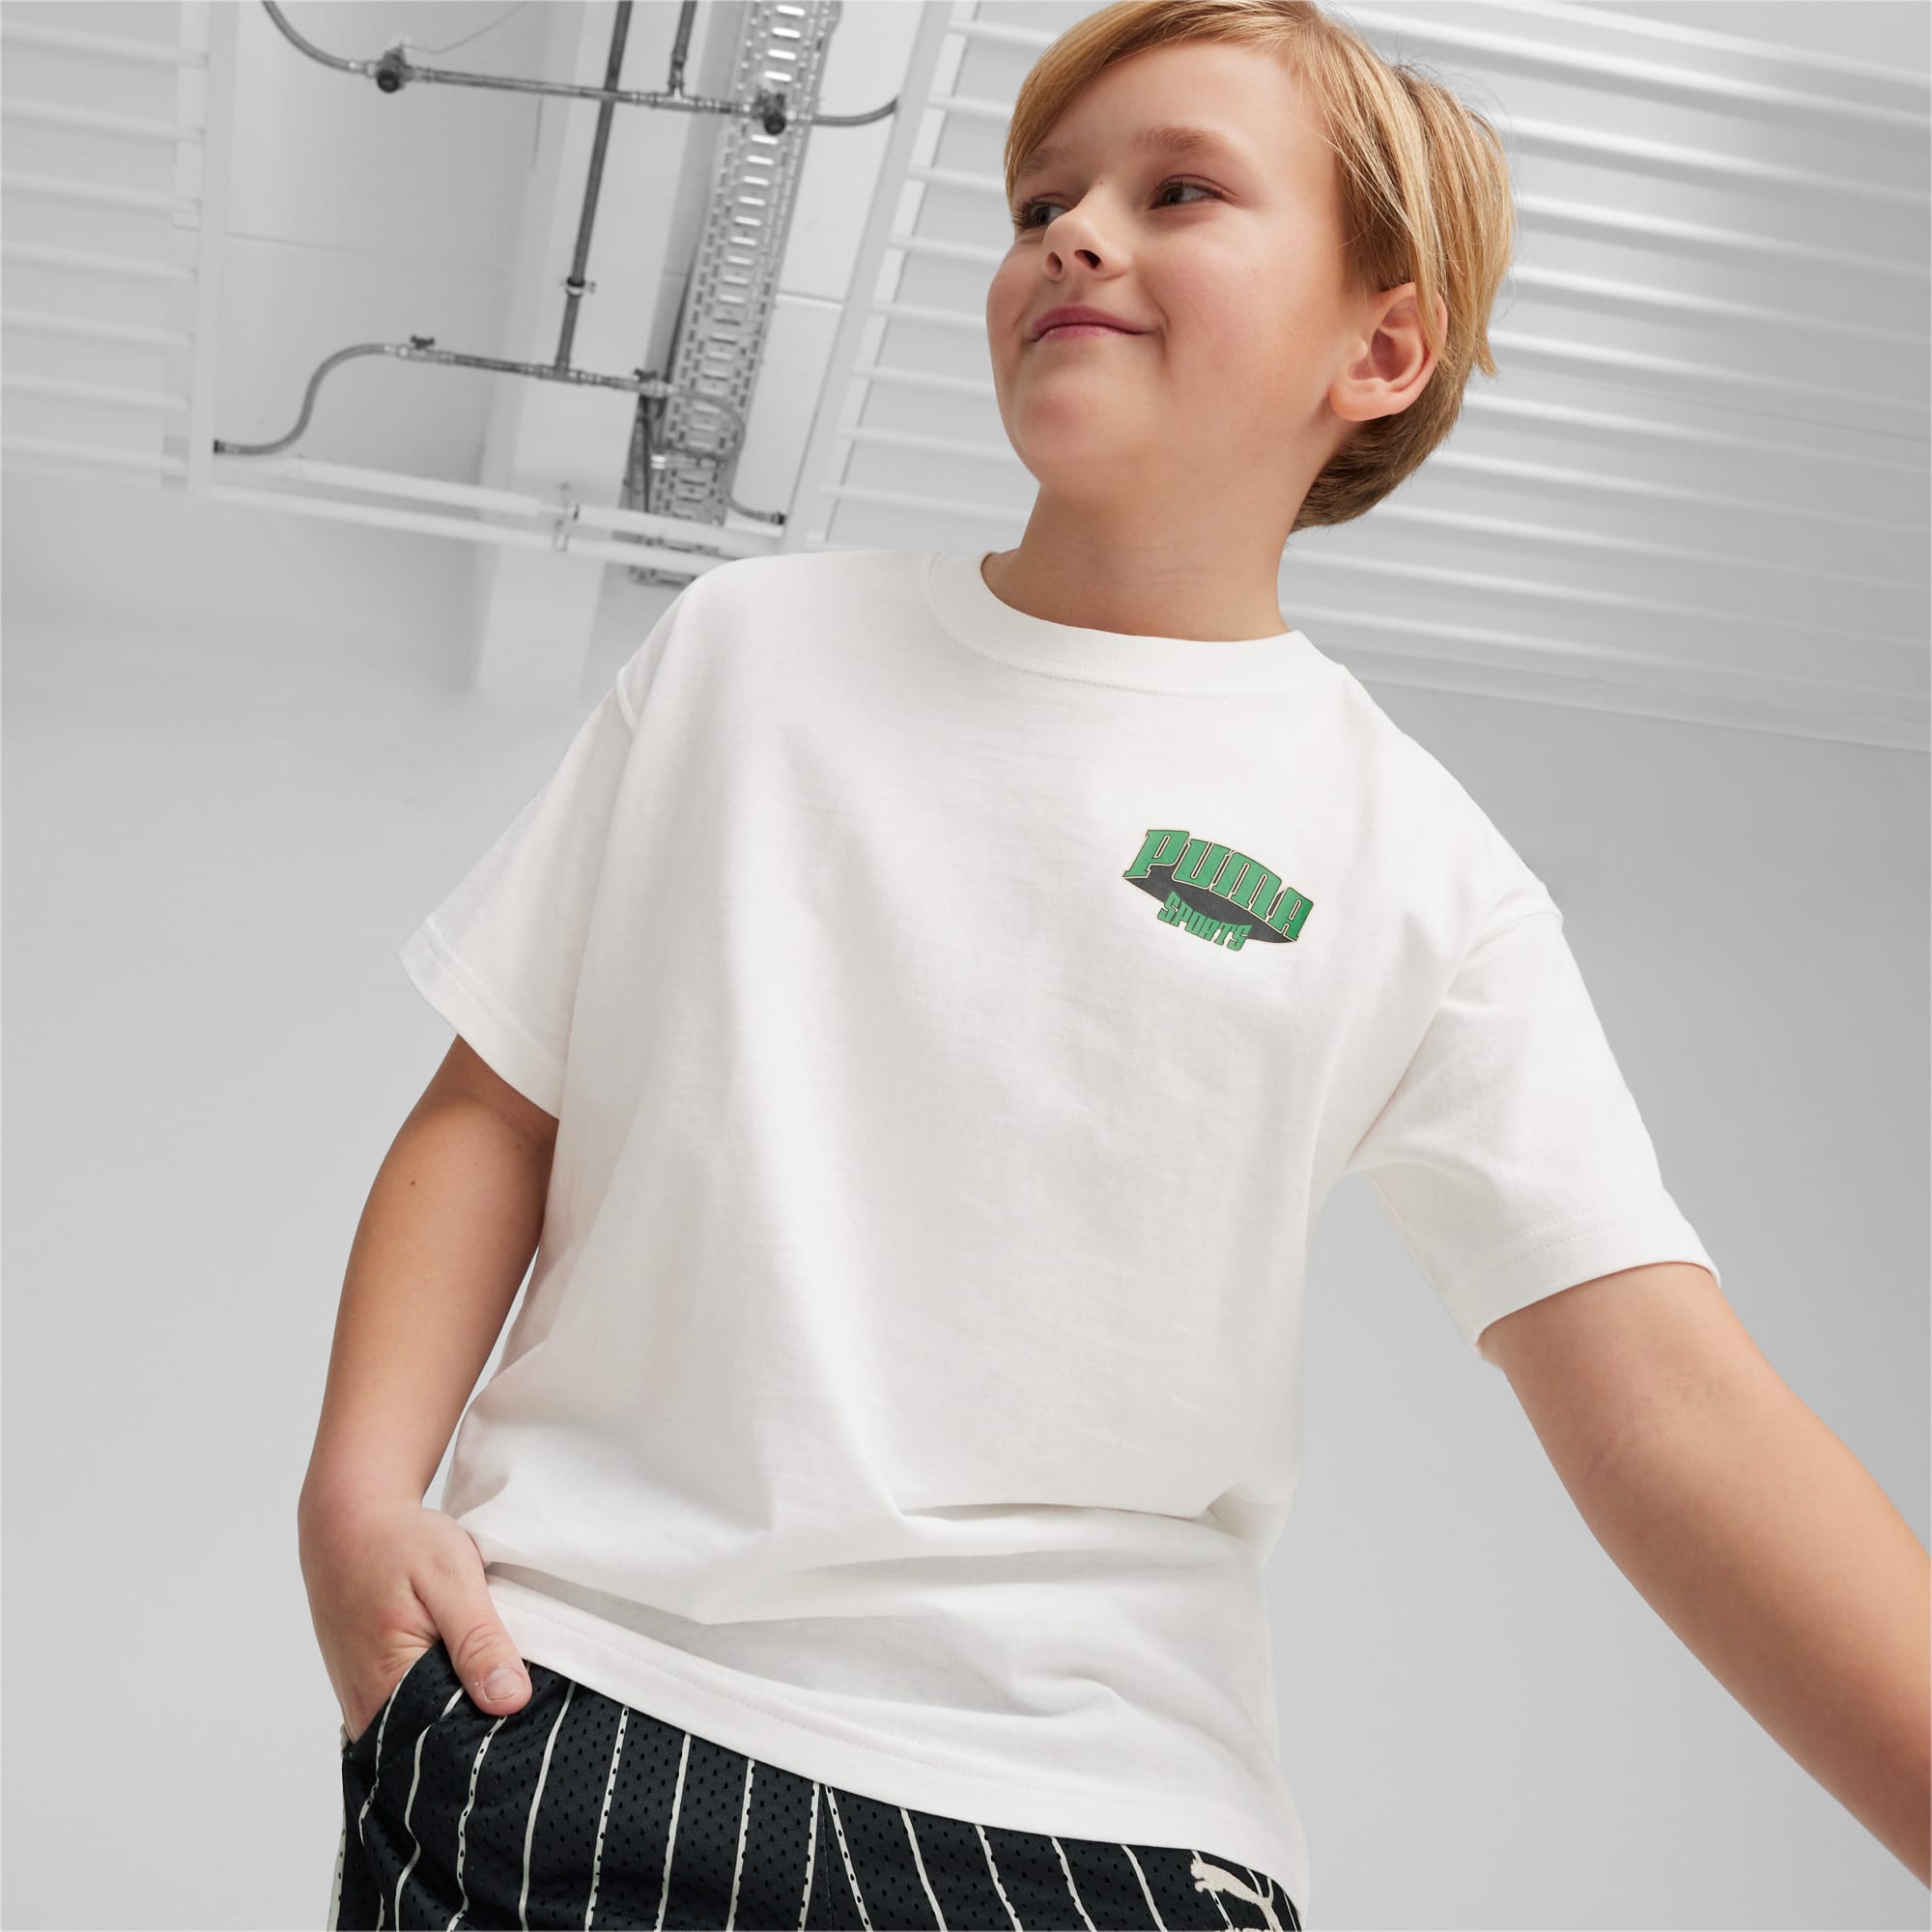 PUMA FOR THE FANBASE Graphic T-Shirt Teenager Für Kinder, Weiß, Größe: 128, Kleidung